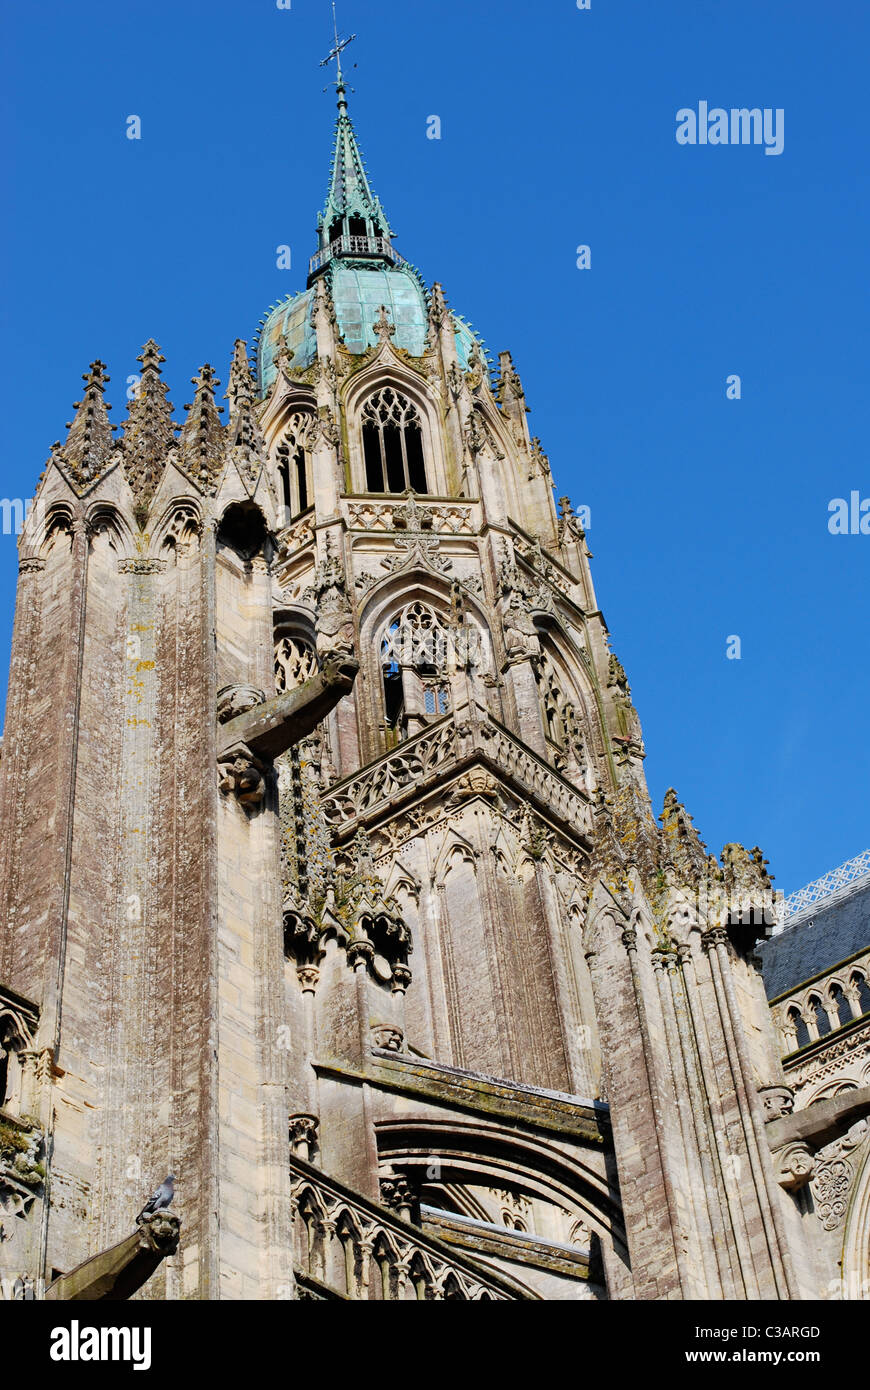 Vue de la tour de la cathédrale de Bayeux, Normandie, France Banque D'Images